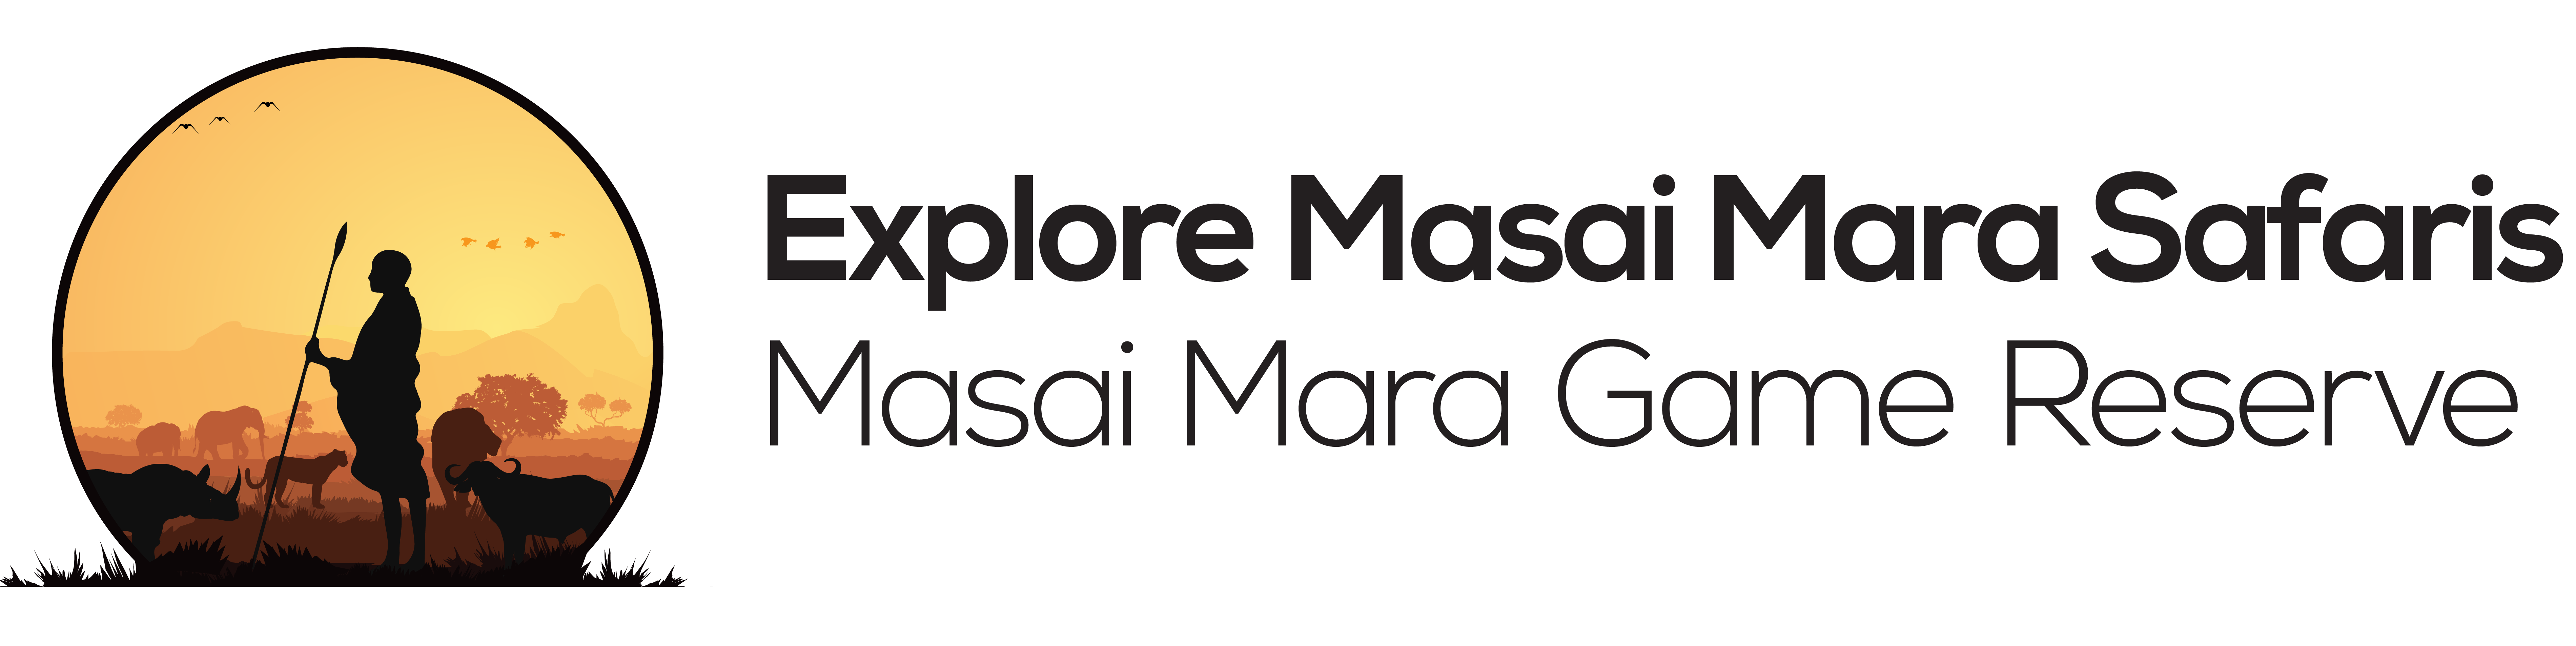 Explore masai mara | Hot air baloon ride in masai mara - masai mara reserve hot air baloon tour